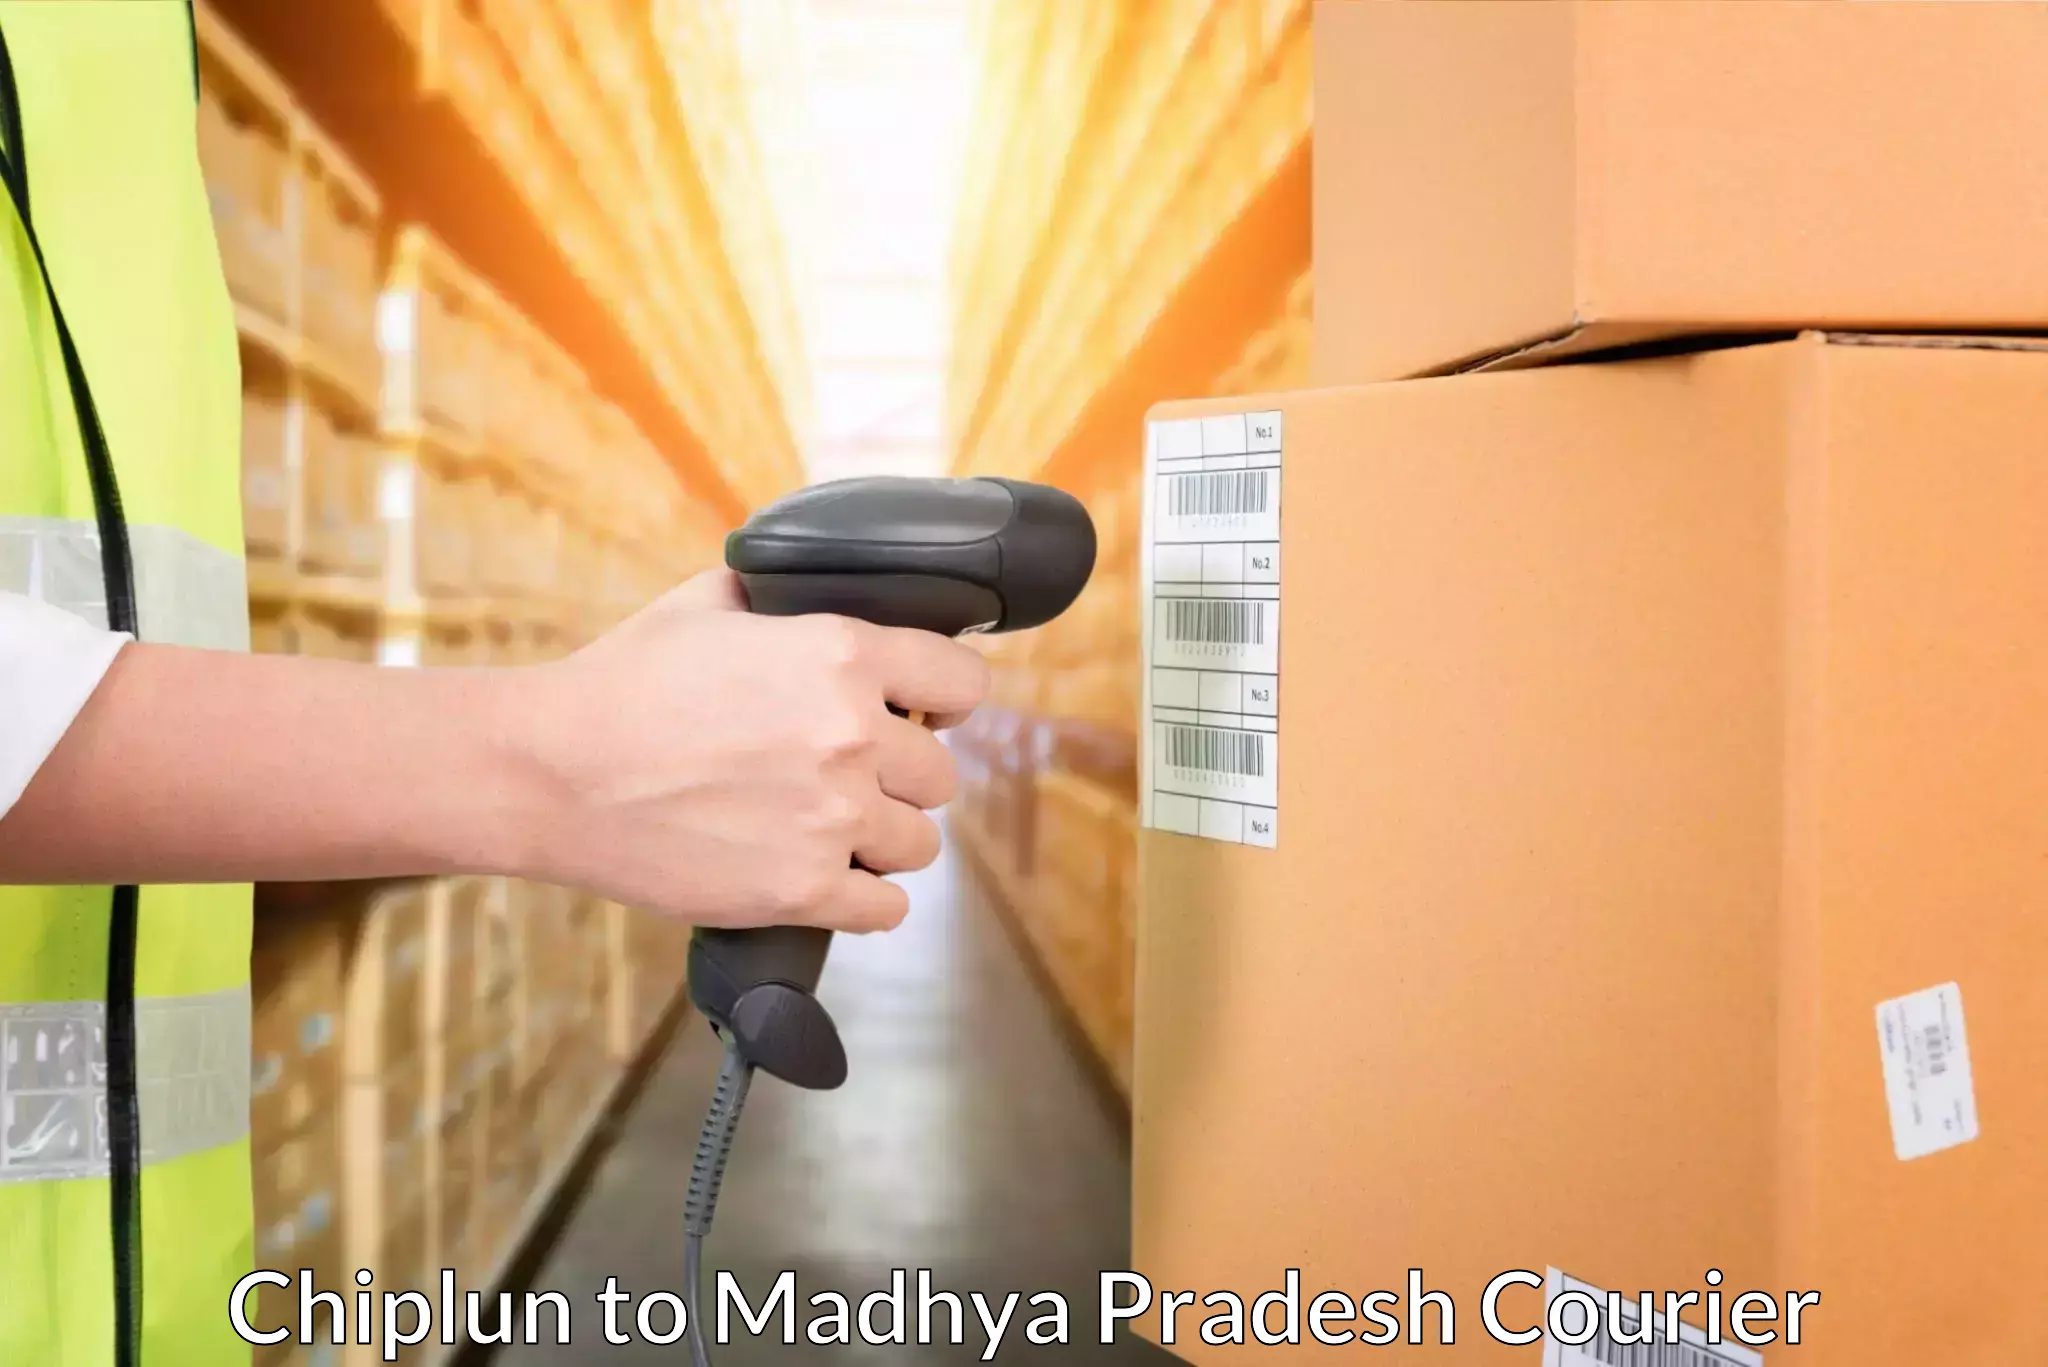 Seamless shipping service Chiplun to Ashoknagar